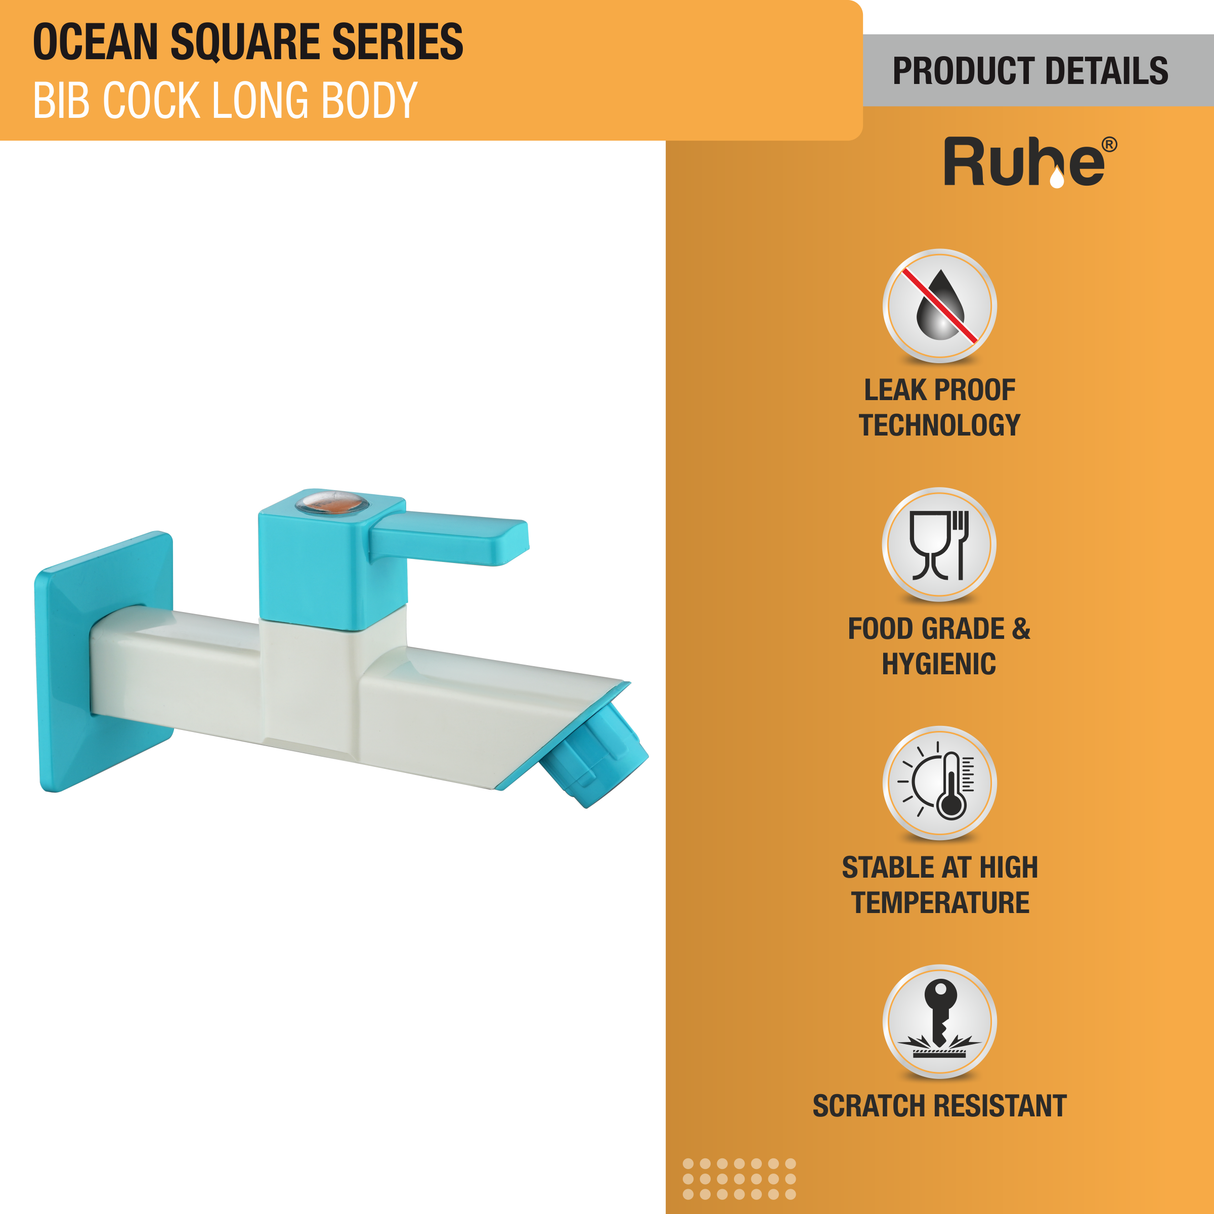 Ocean Square PTMT Bib Cock Long Body Faucet details